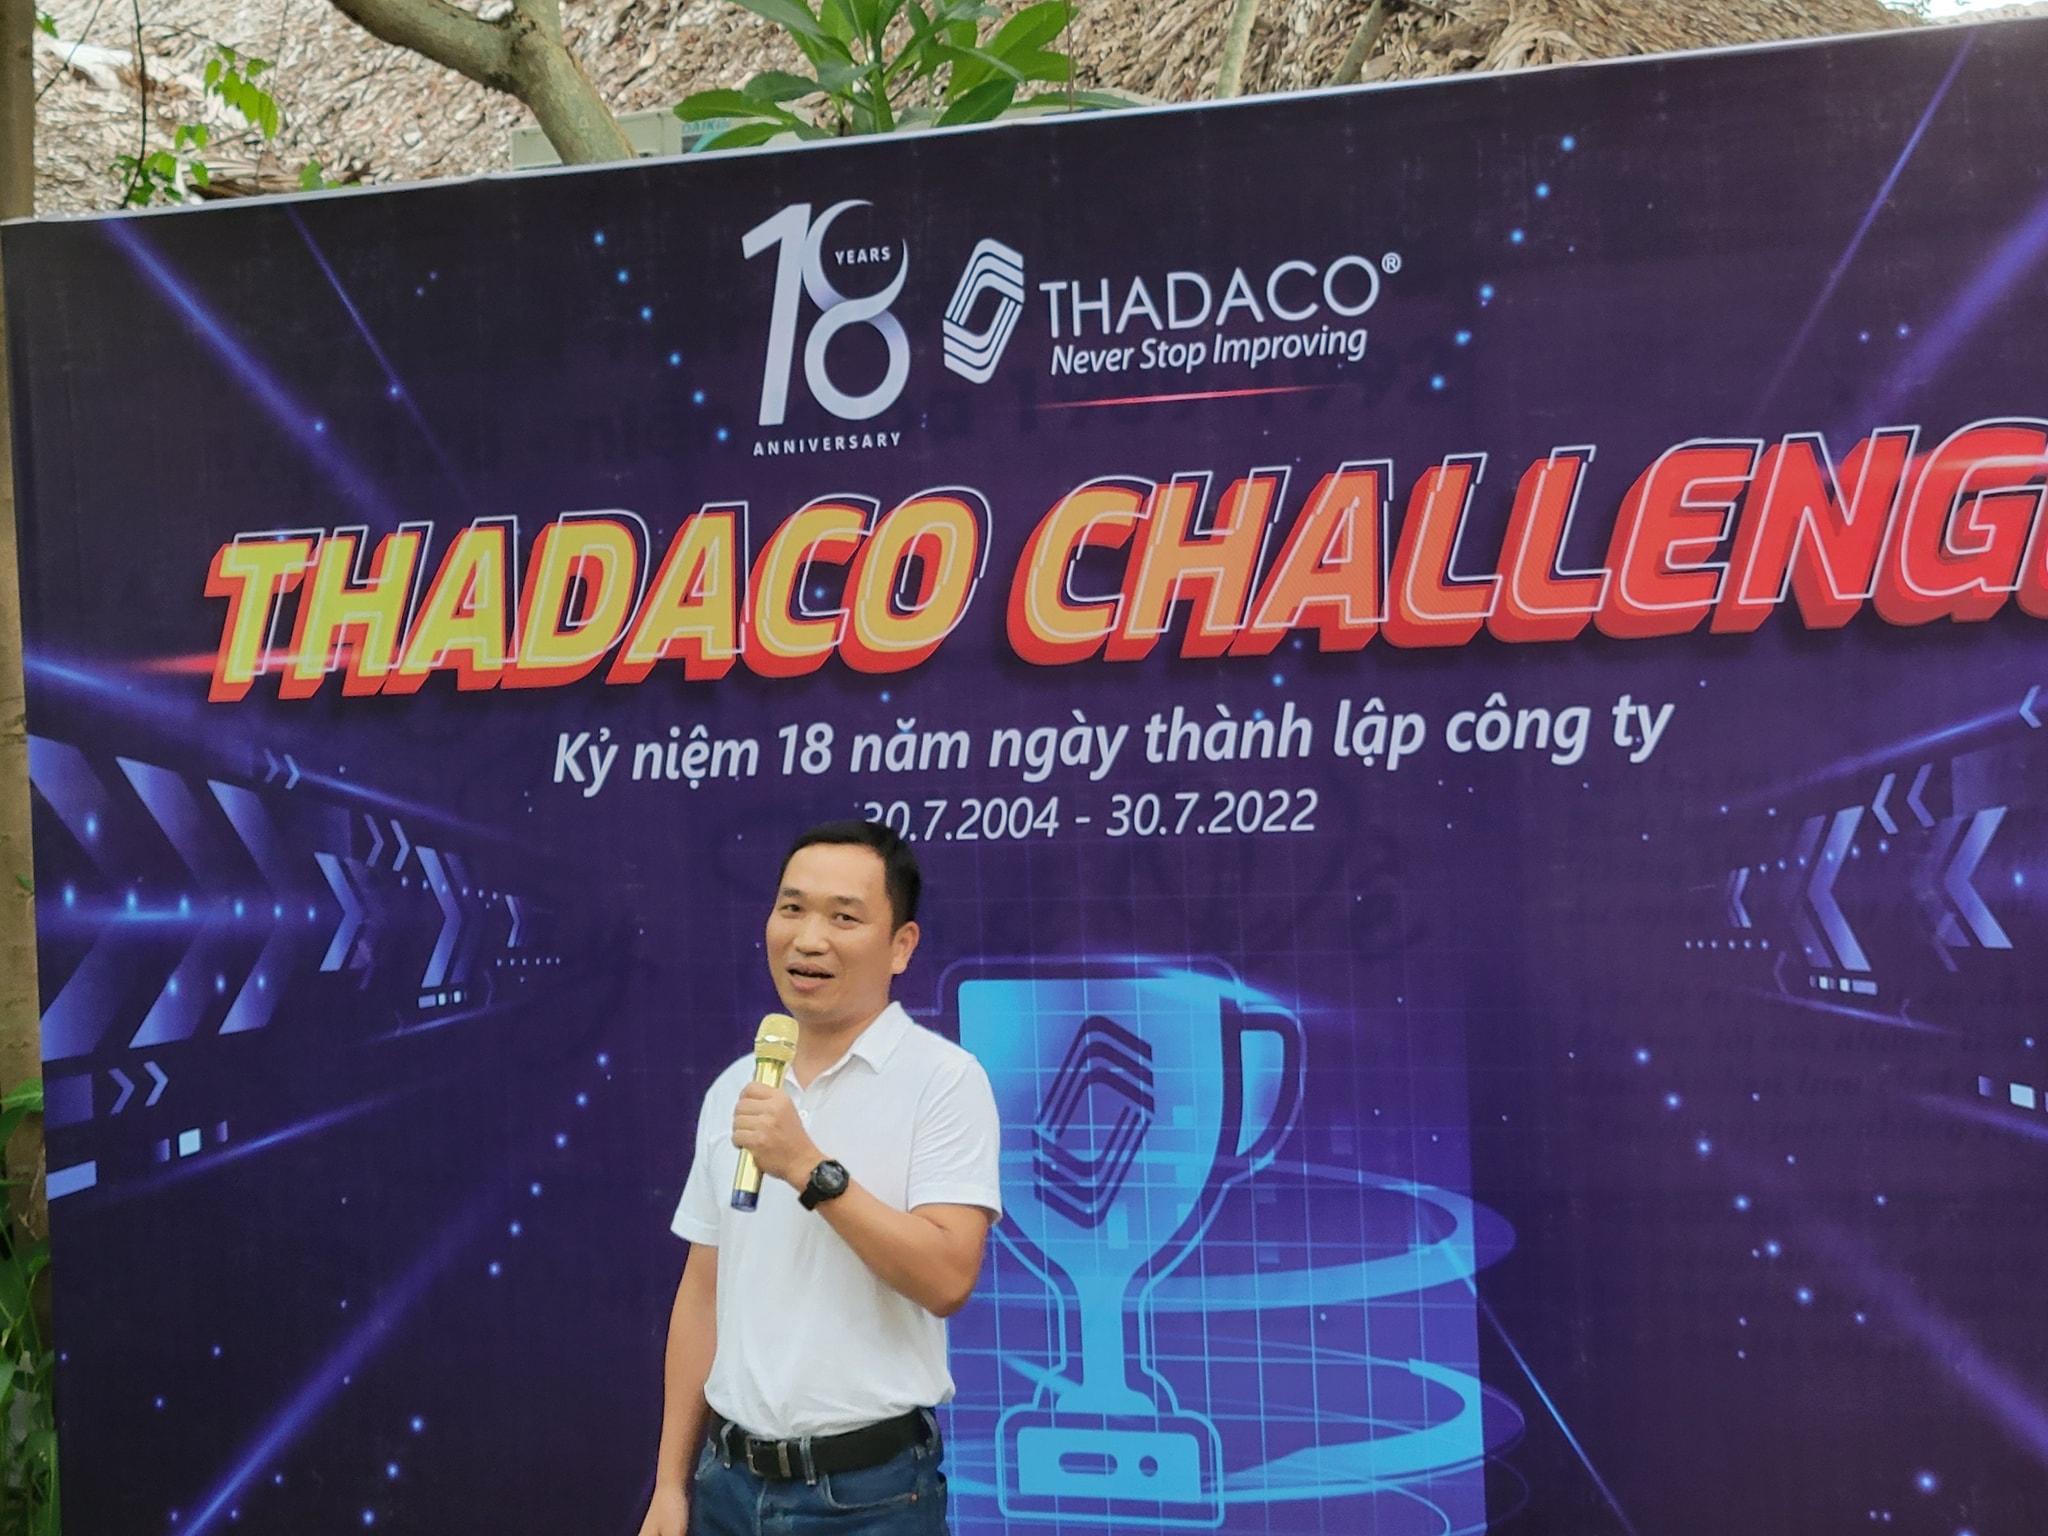 Thành Đạt THADACO: Tưng bừng kỷ niệm 18 năm thành lập